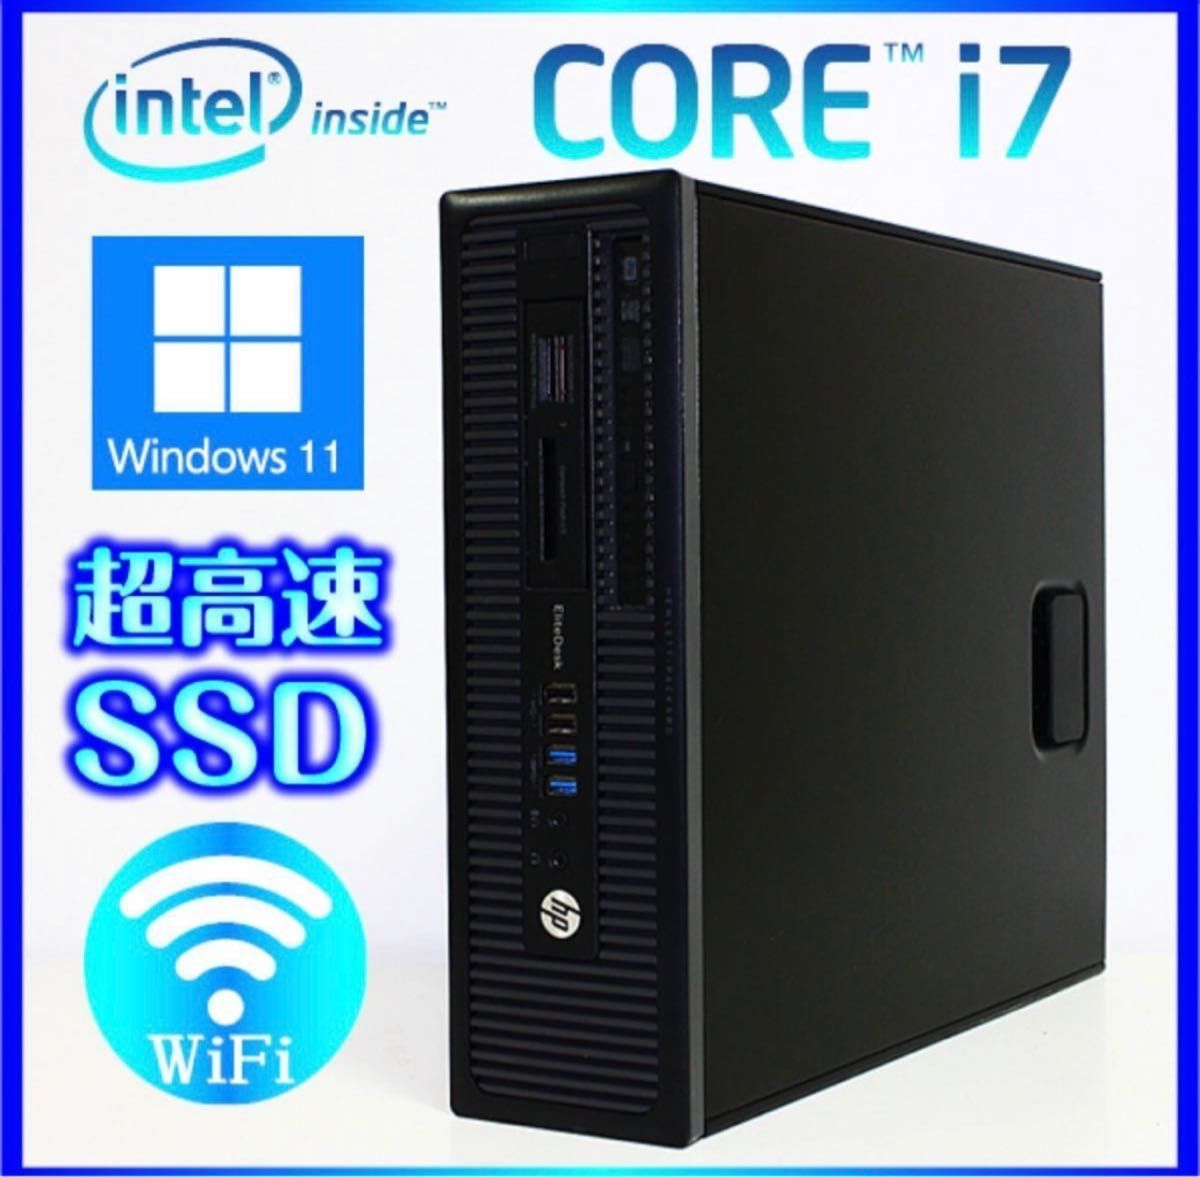 HP Win11 Core i7-4790 /SSD 256GB +HDD1000GB 16GB Office2021